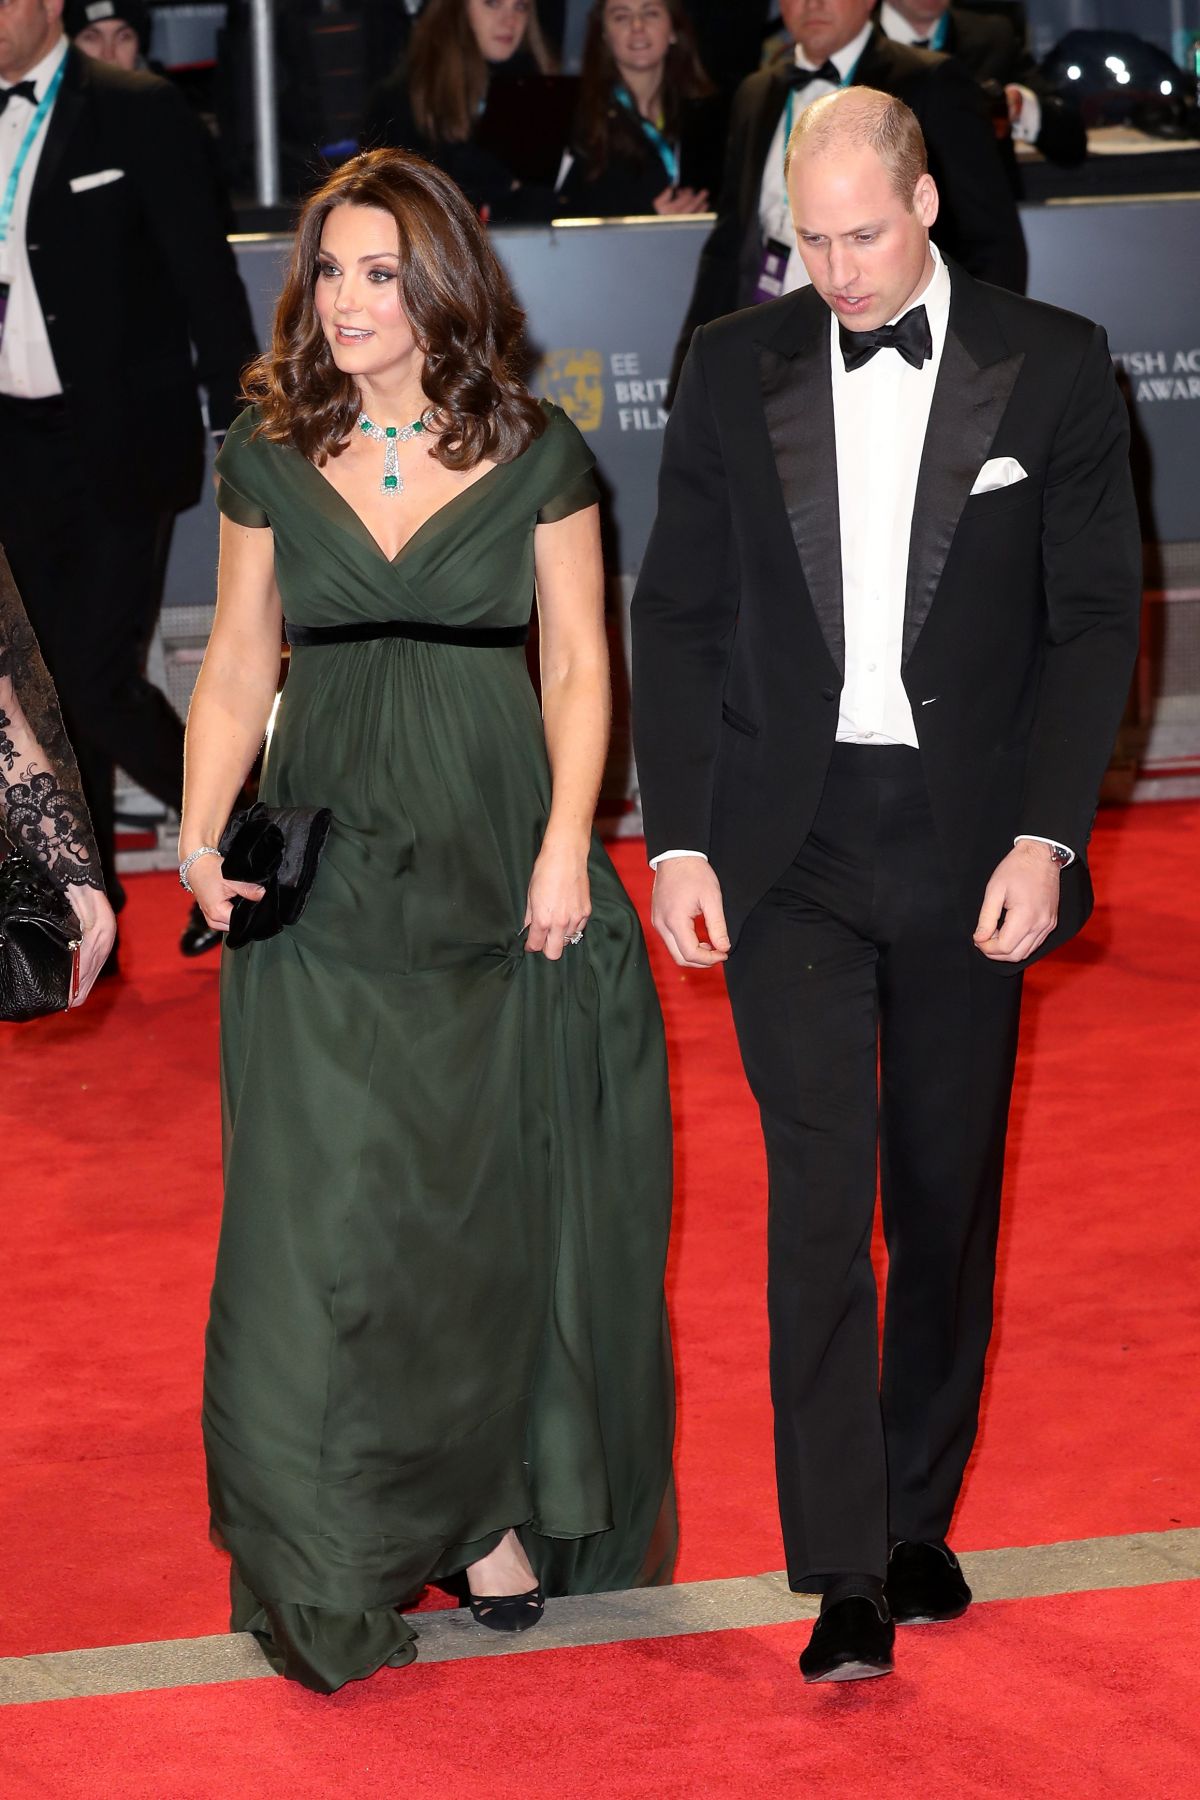 Pregnant KATE MIDDLETON at BAFTA Film Awards 2018 in London 02/18/2018